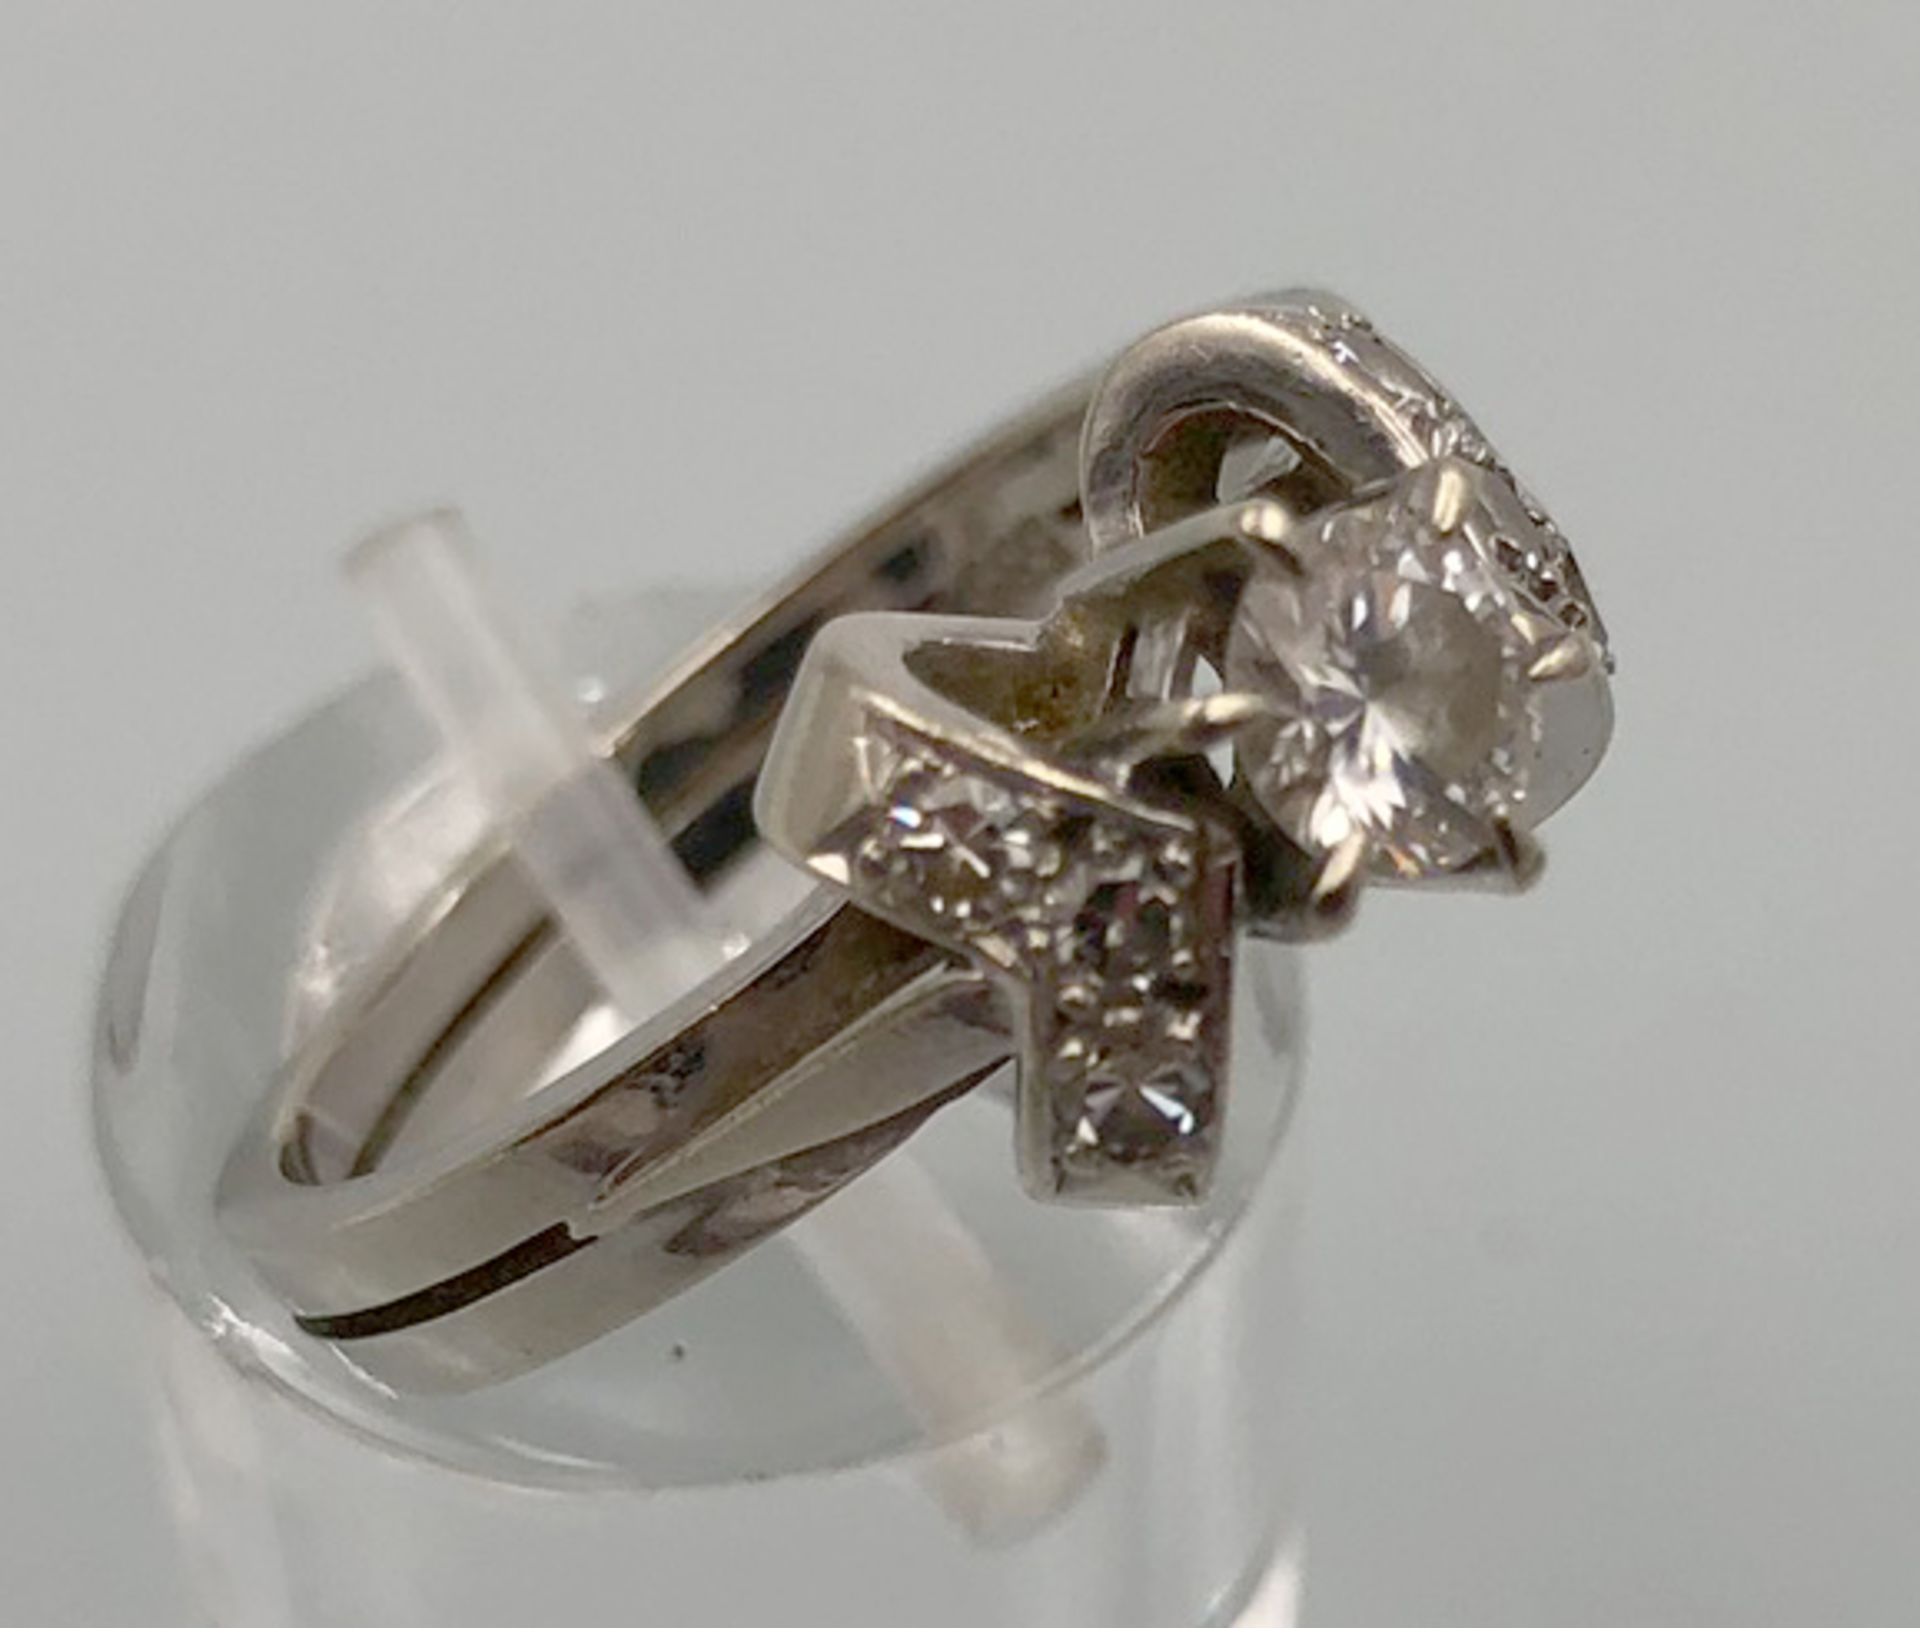 Weiß Gold 585. Ring mit Brillanten.4,0 Gramm Gesamtgewicht. Der mittige Diamant 4,48 mm Durchmesser, - Bild 8 aus 13